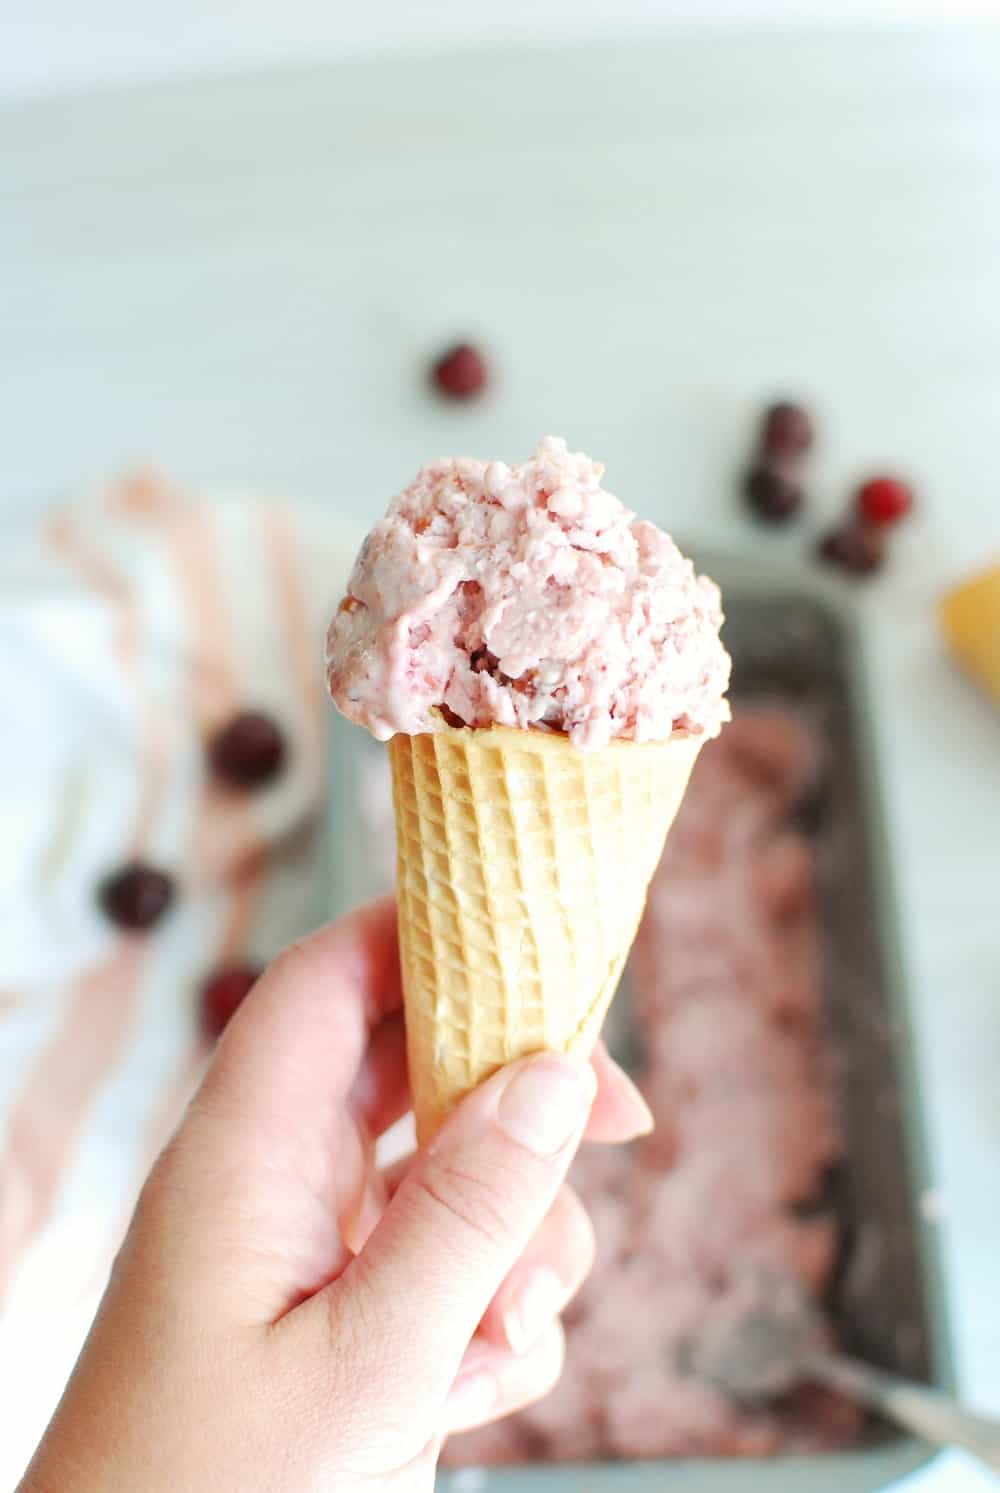 a sugar cone full of cherry vanilla ice cream